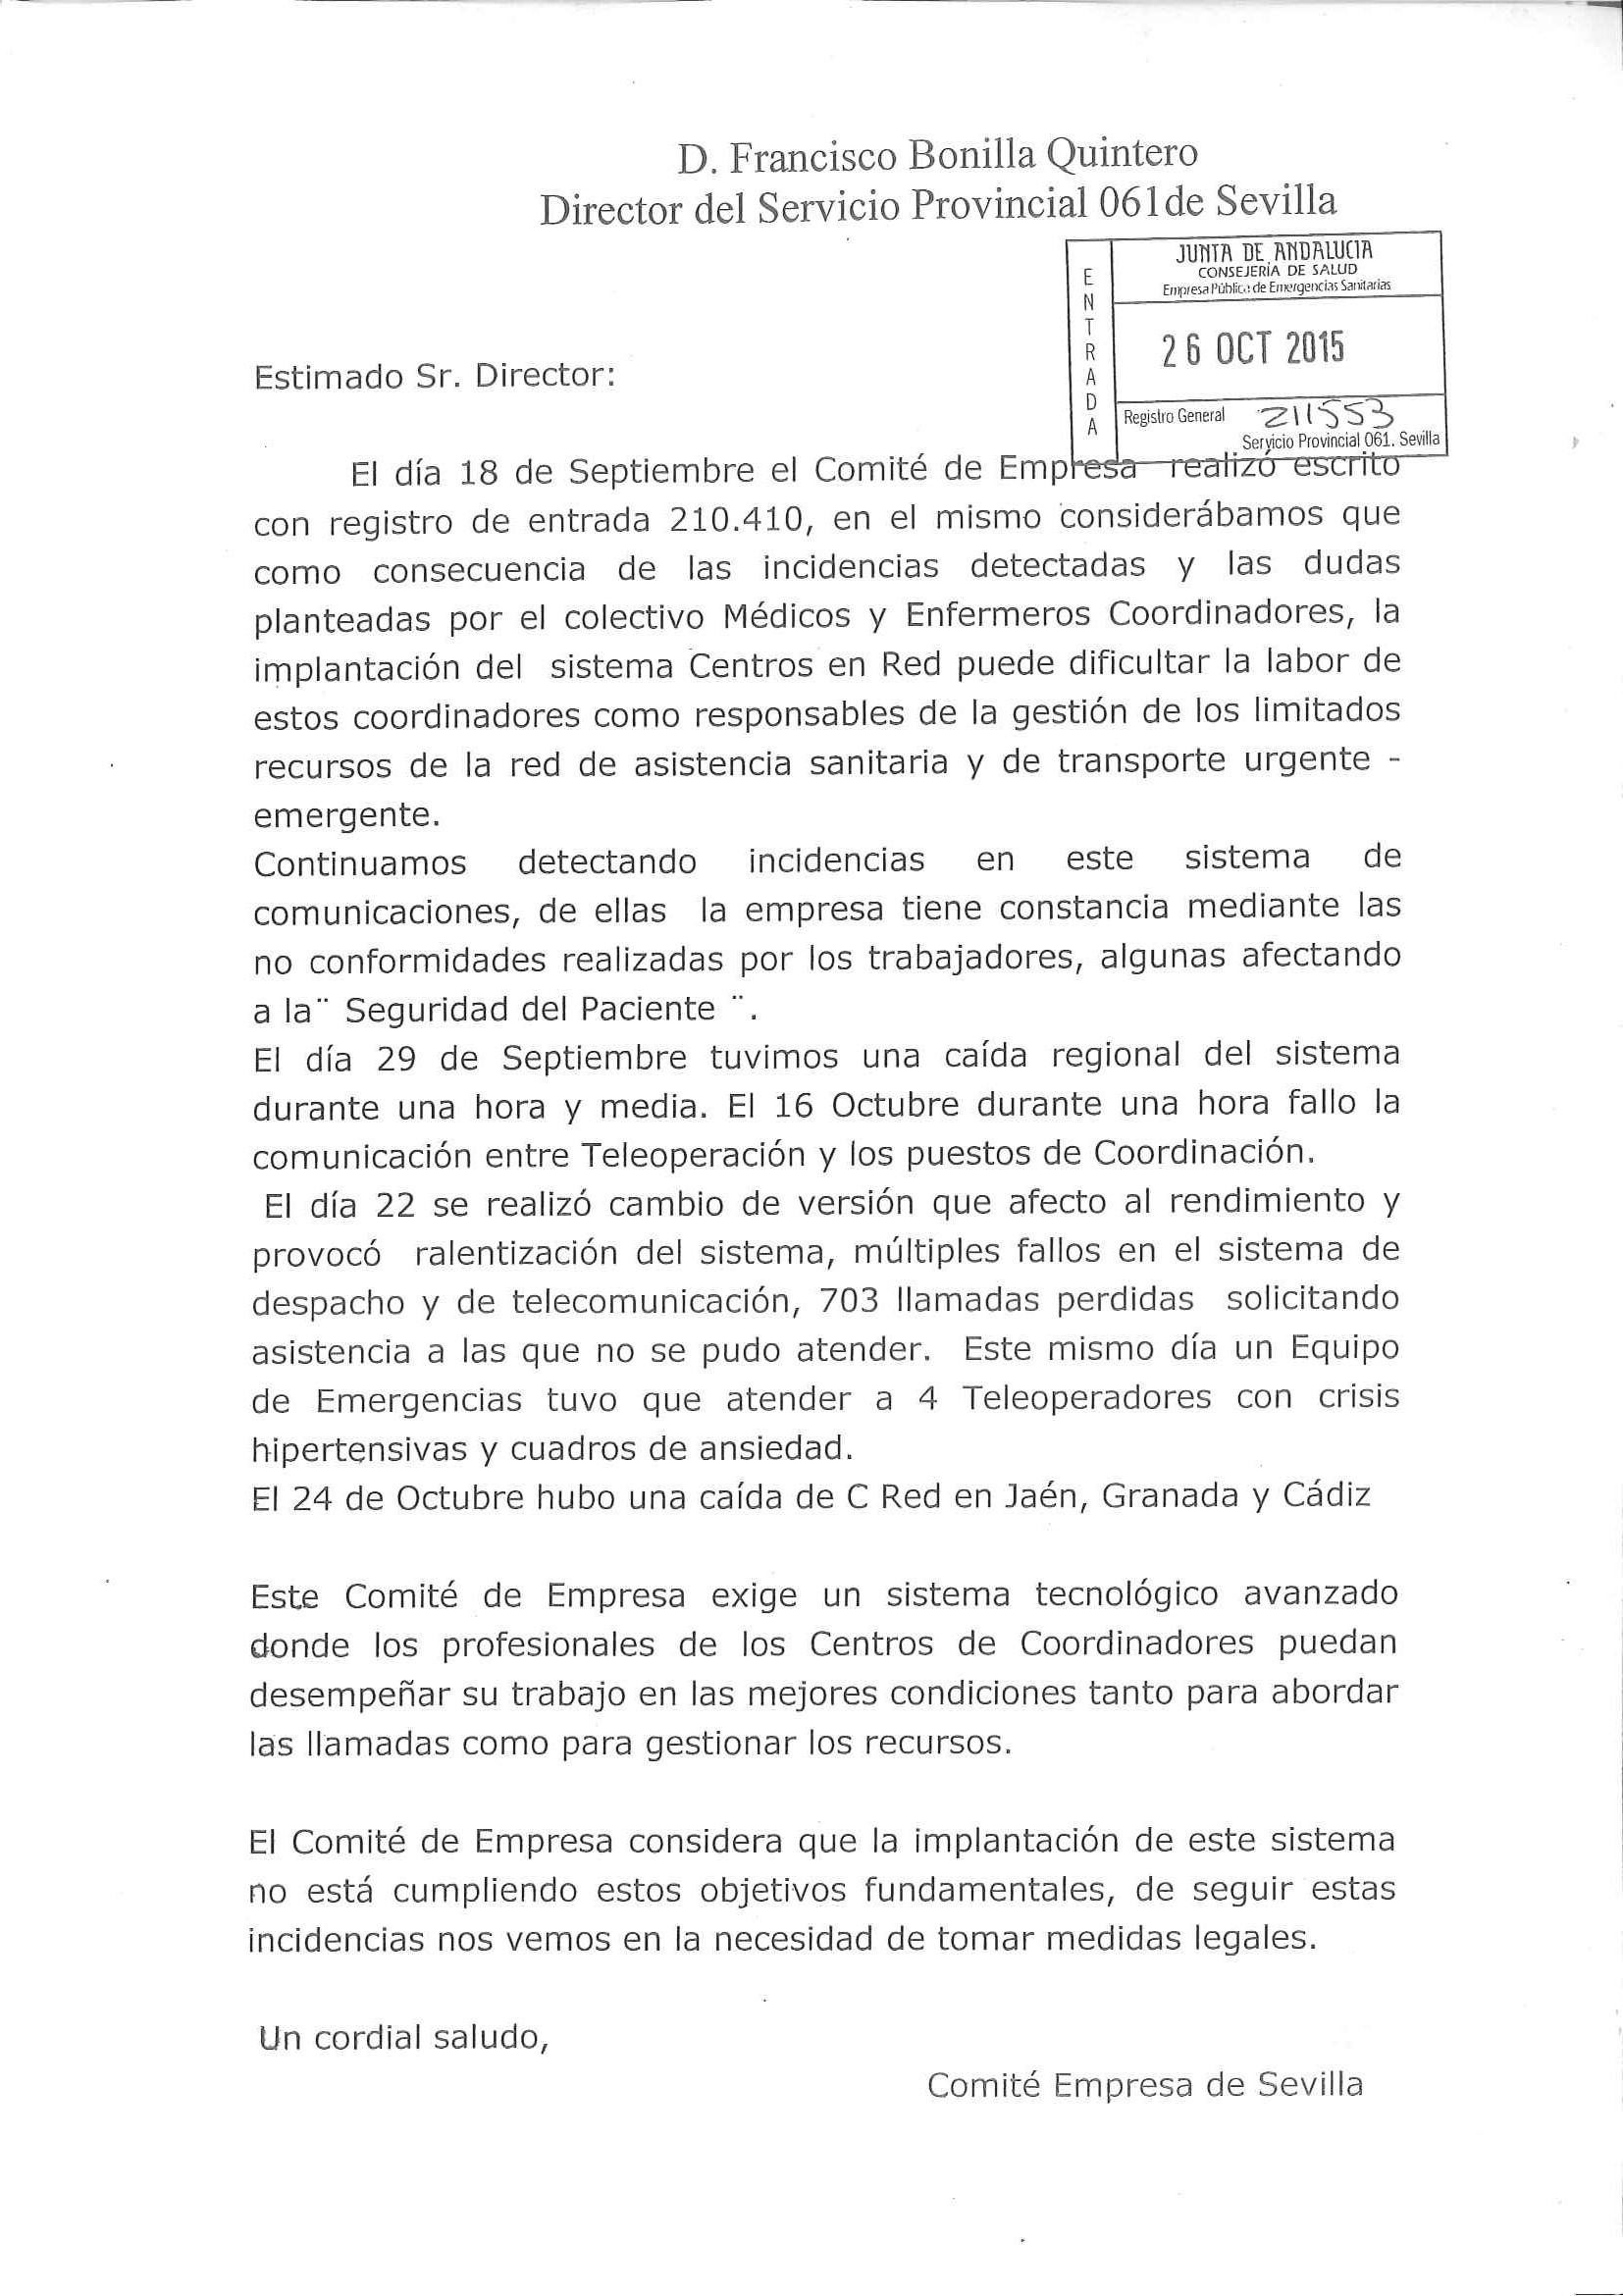 Documento del Comité de Empresa de la provincia de Sevilla presentado ante el Director Provincial del 061 y denunciando los problemas del SIEPES EN RED. 